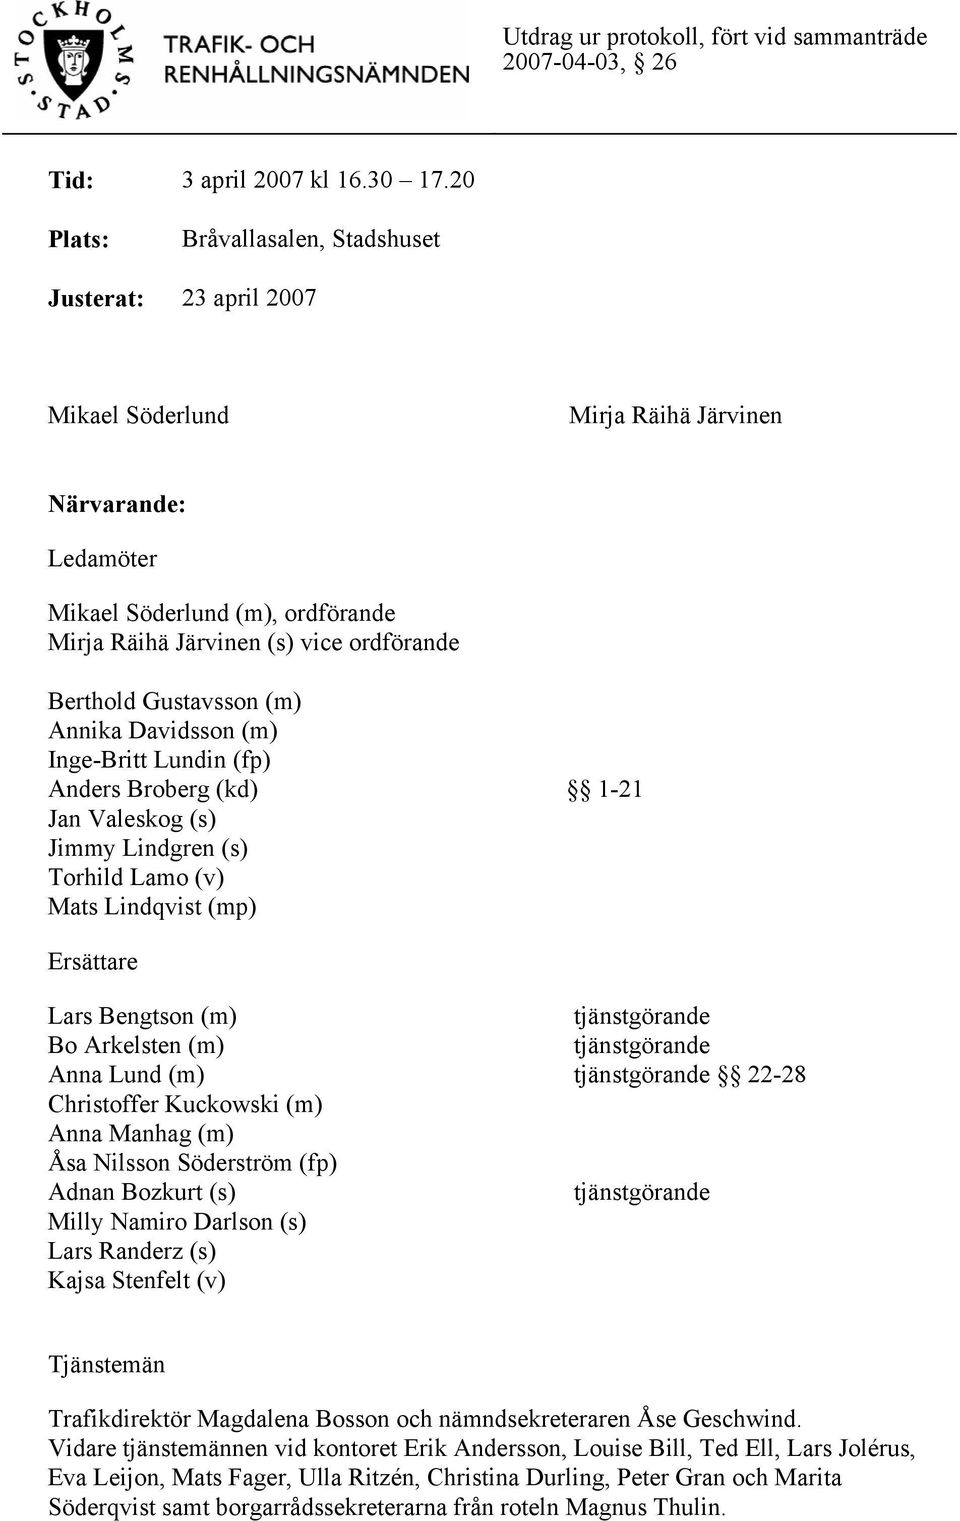 Berthold Gustavsson (m) Annika Davidsson (m) Inge-Britt Lundin (fp) Anders Broberg (kd) 1-21 Jan Valeskog (s) Jimmy Lindgren (s) Torhild Lamo (v) Mats Lindqvist (mp) Ersättare Lars Bengtson (m) Bo